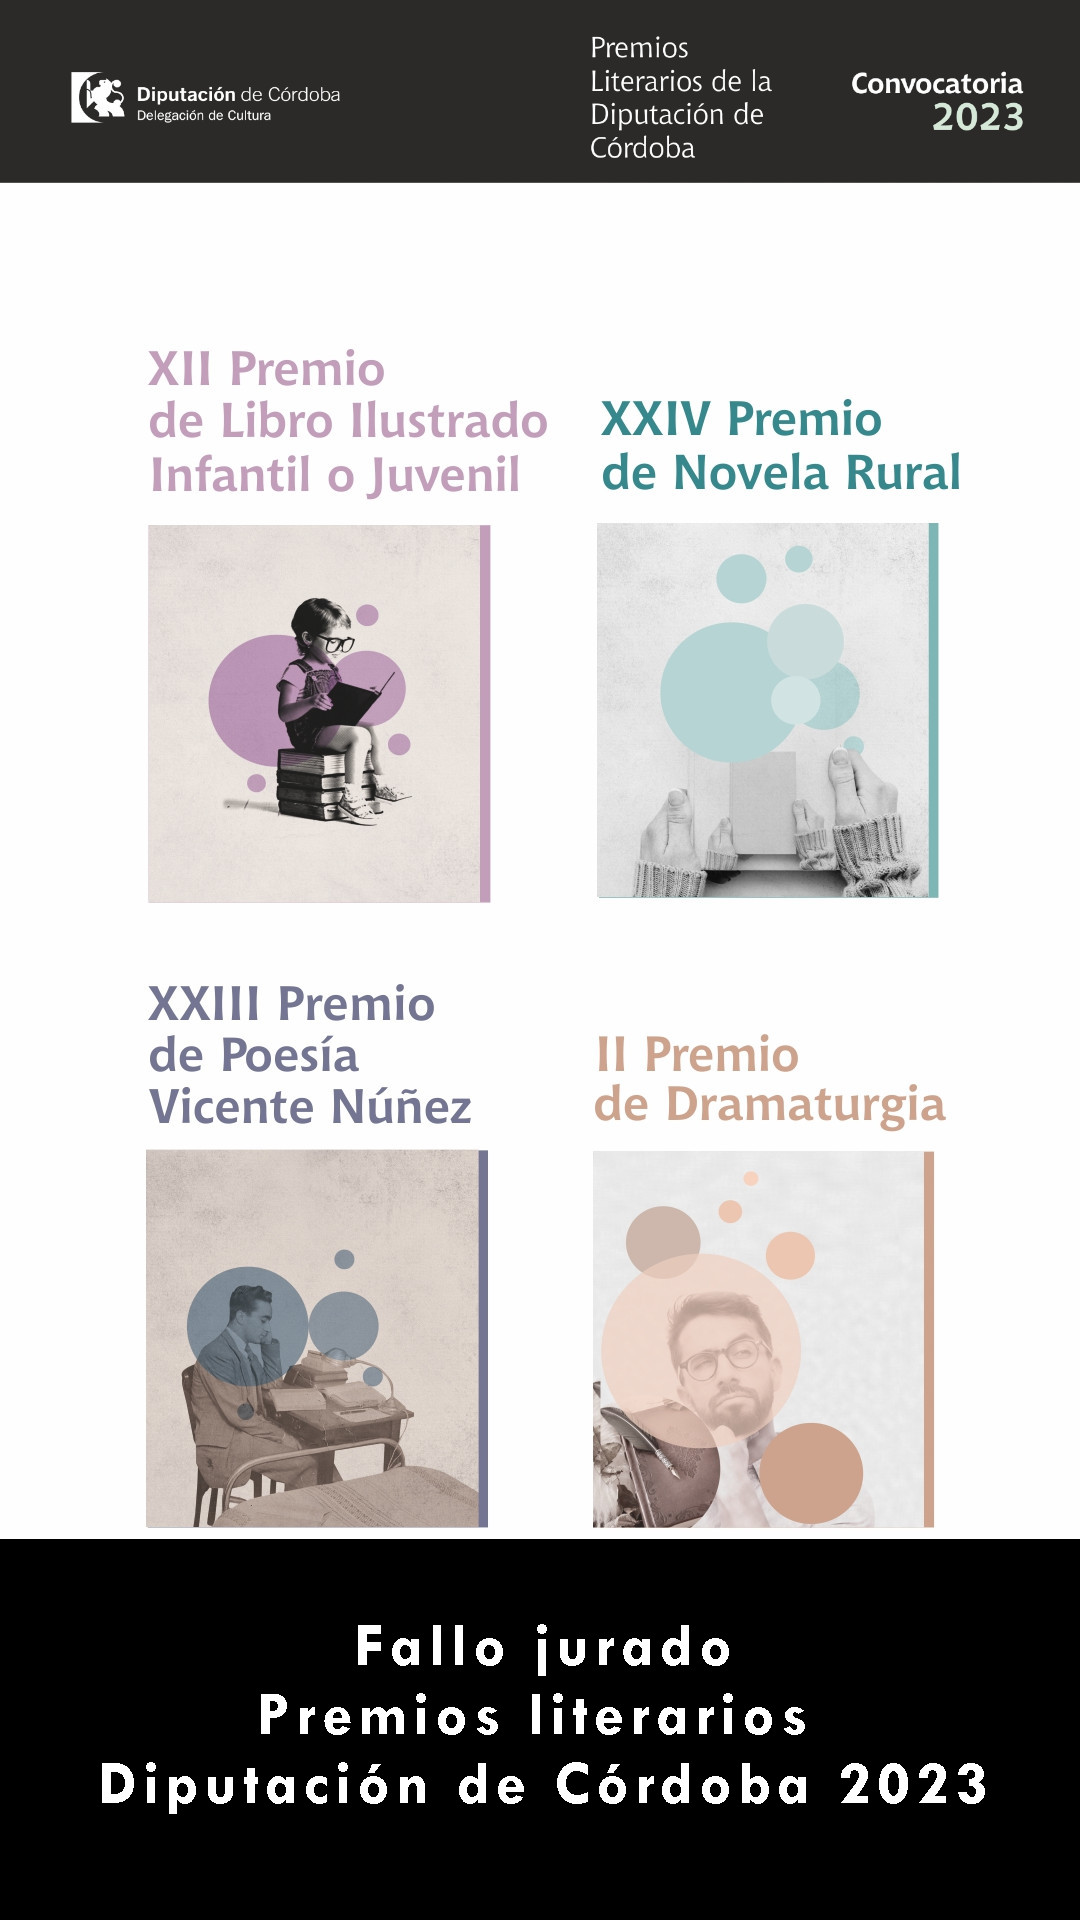 Fallo jurado de los Premios Literarios Diputación de Córdoba 2023